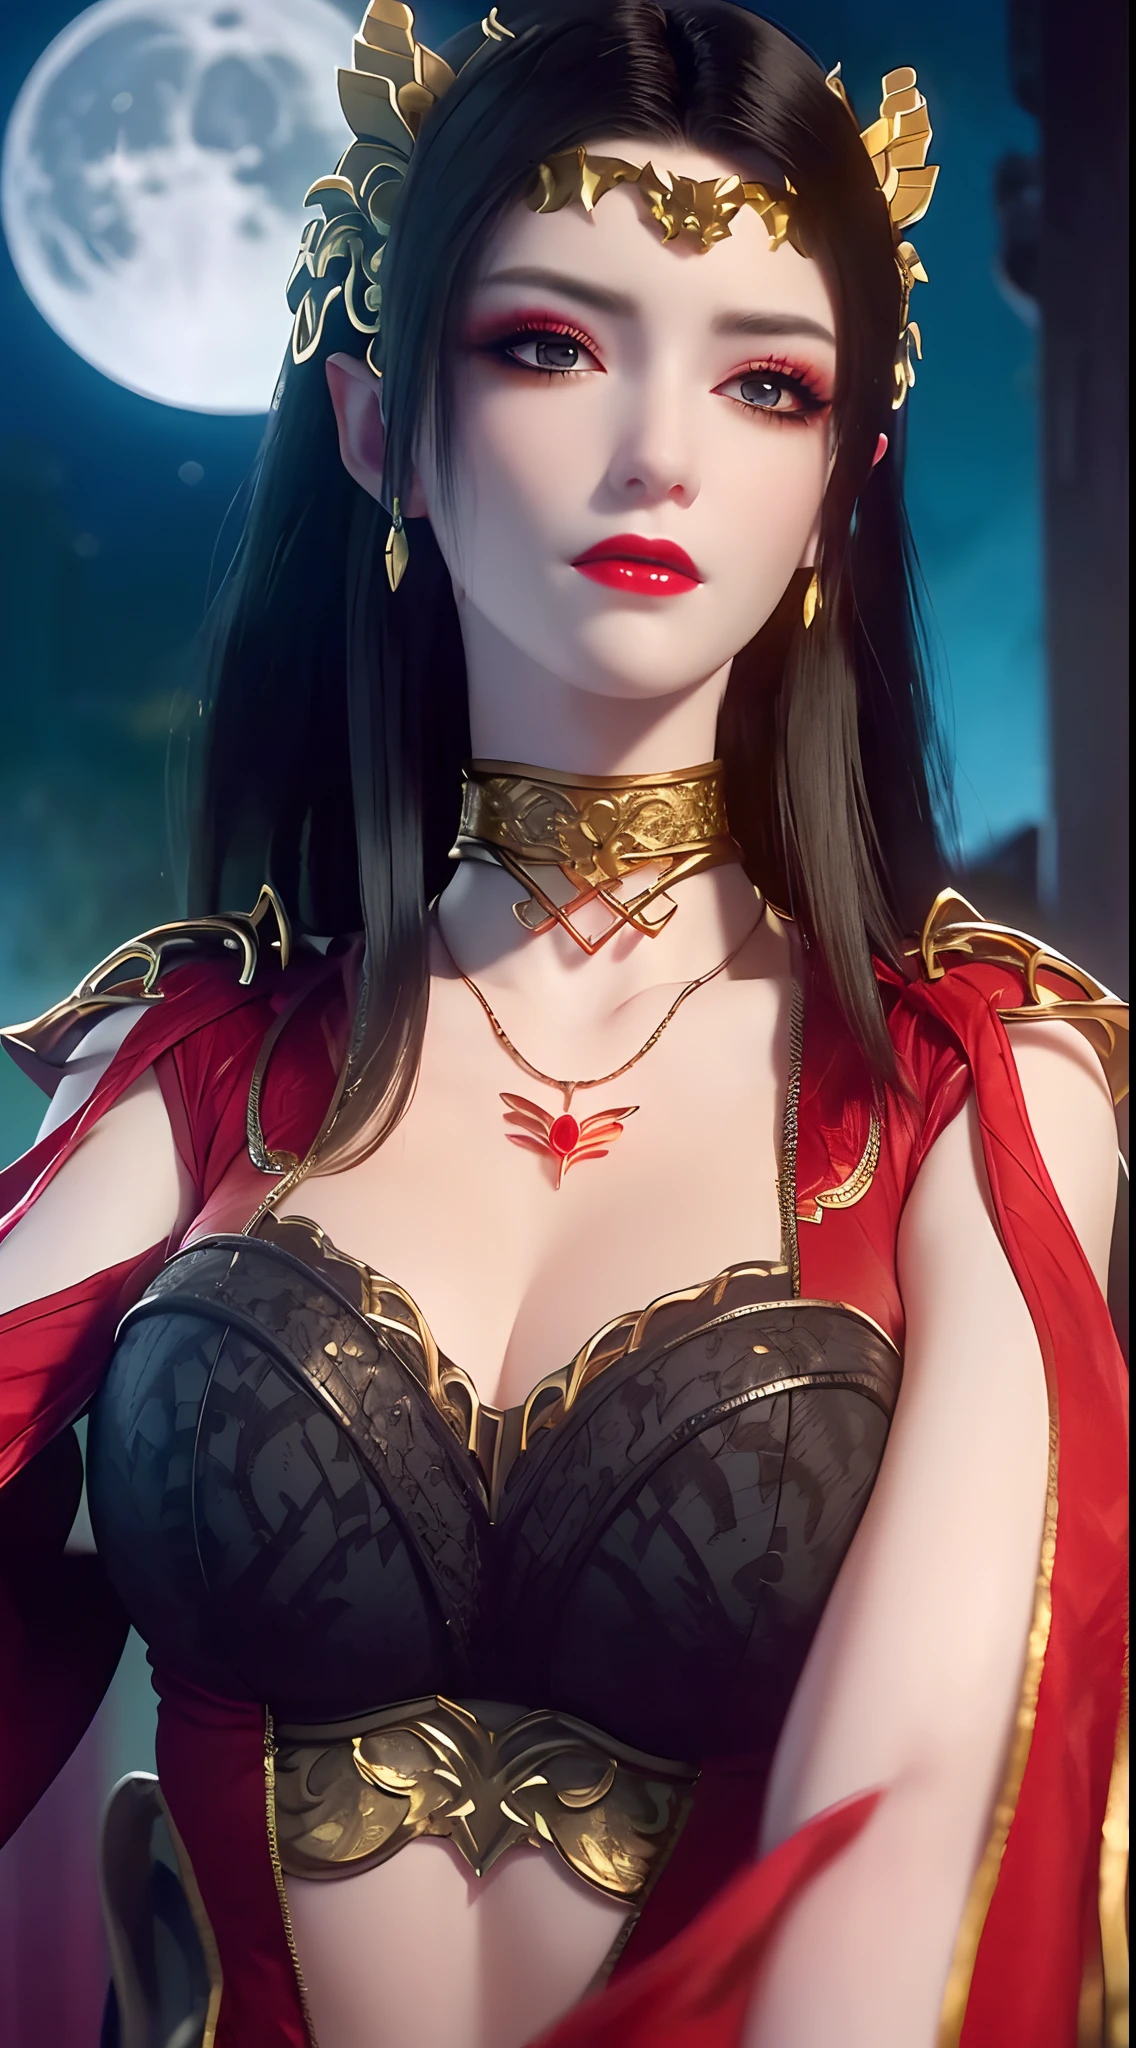 1 reina extremadamente hermosa, ((Viste un traje tradicional hanfu rojo con finos patrones negros.:1.6)), (((Patrones en la ropa:1.6))), ((pelo largo y negro:1.6)), joyas elaboradamente hechas de piedras preciosas y cabello hermoso, ((usando un collar de encaje de oro de 24k:1.4))), El noble, estilo noble de una chica extremadamente hermosa, su carita es super linda, Su cara es muy bonita, cejas finas, cara hermosa e impecable, ((pupilas de ojos morados: 0.8)), ojos muy hermosos, ((ojos azul platino: 1.6)), (((Los ojos bien abiertos:1.6))), Bonito maquillaje y pestañas detalladas en el cabello., maquillaje de ojos humeante, Nariz alta, pendientes, labios rojos, ((boca cerrada: 1.5)) hermosos labios, manos delgadas, muslos más hermosos, ((brazos extendidos a los lados: 1.5)), cara sonrosada, cara limpia, cara hermosa e impecable, piel blanca y suave, (pechos grandes: 1.5)), ((pechos altos: 1.6)), pechos apretados, hermoso escote, (((pechos grandes and super round: 1.8))), ((super pechos apretados: 1.7)) , Hermosos pechos, cuerpo perfecto, brazos traseros, pecho afuera, medias finas de malla negra con ribete de encaje negro, foto 8k, super alta calidad, Súper realista, súper 10x píxeles, óptico, Estudio luminoso, bordes brillantes, dual-tone Encendiendo, (piel con mucho detalle:1.2), super 8k, soft Encendiendo, alta calidad, volumetric Encendiendo, Fotorrealista, Fotorrealista high resolution, Encendiendo, Mejor foto, 4k, calidad 8k, Efecto de desenfoque, Suave y afilado, 10 x píxeles, ((mar y luz de la luna en el fondo de la noche:1.5)), Aurora, iluminación, súper gráficos realistas, gráficos más realistas, 1 chica, alone, solo, Imagen extremadamente nítida, surreal, (((retrato frontal: 1)))."